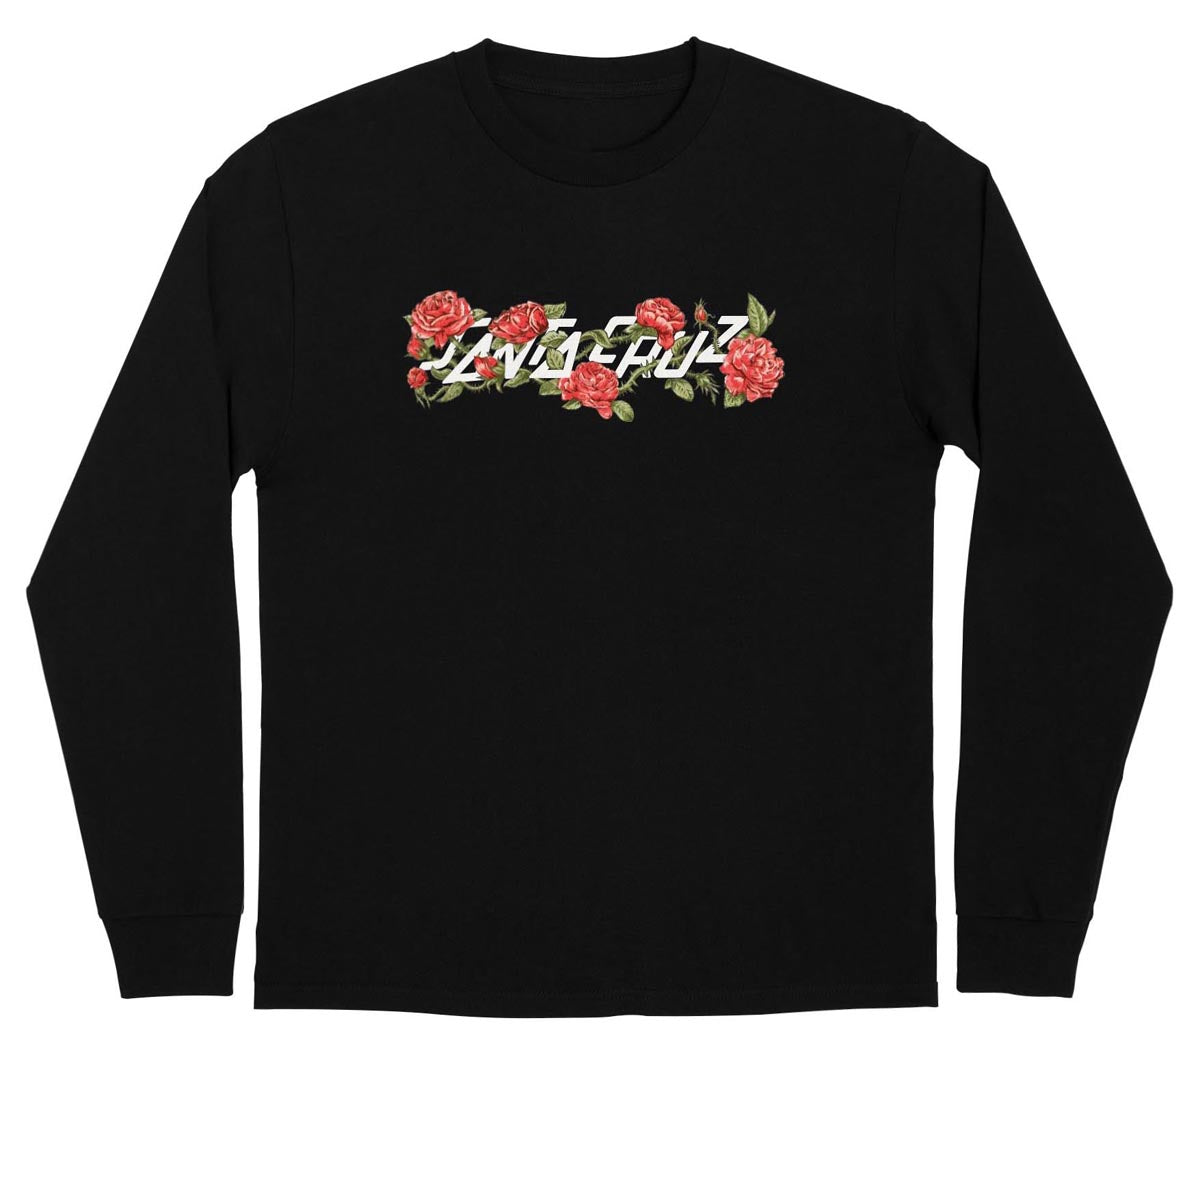 Santa Cruz Rosary Strip Long Sleeve T-Shirt - Black image 1